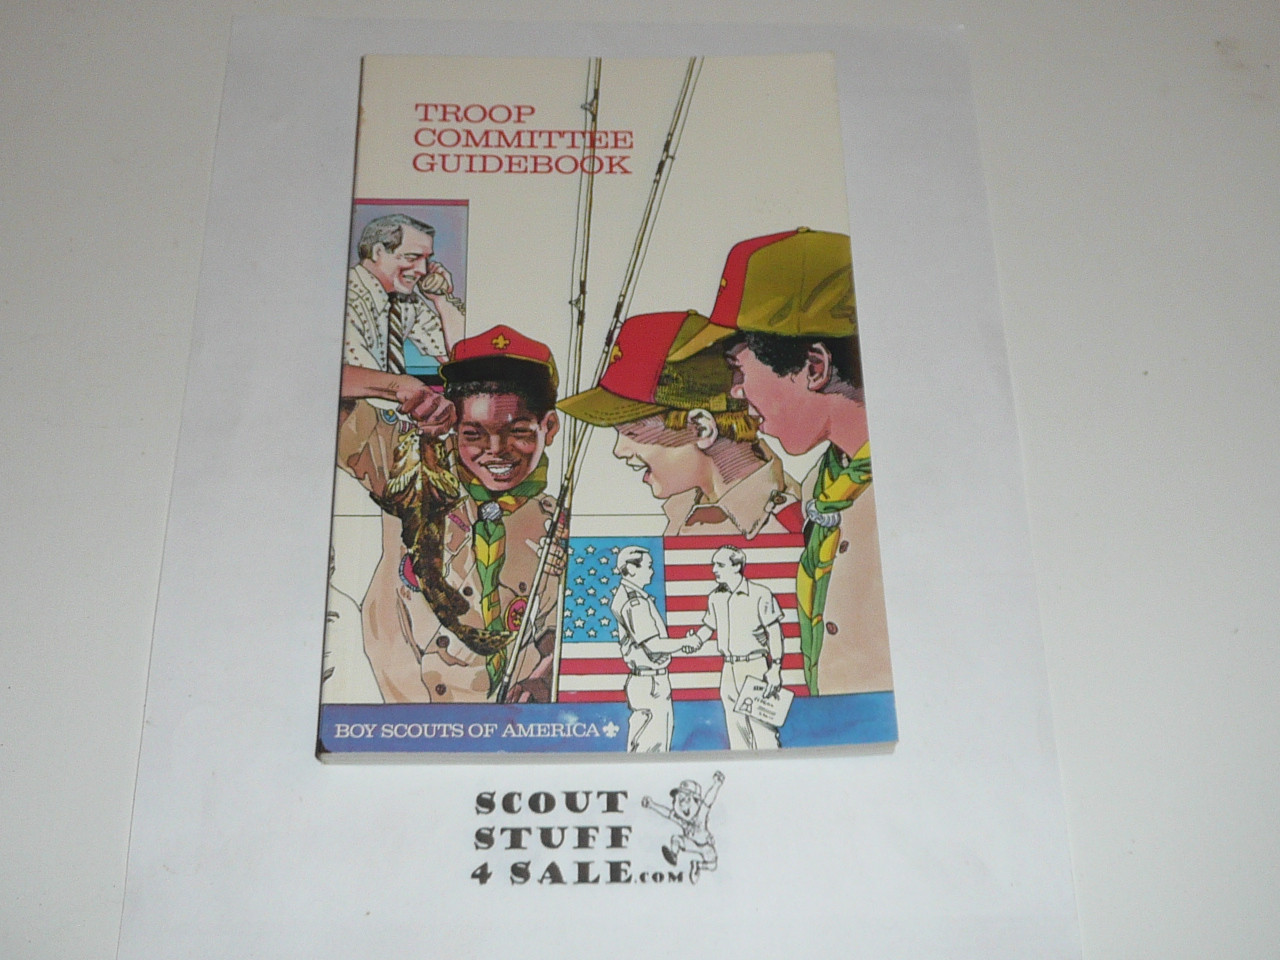 1987 Troop Committee Guidebook, 1987 printing, Very Good Condition